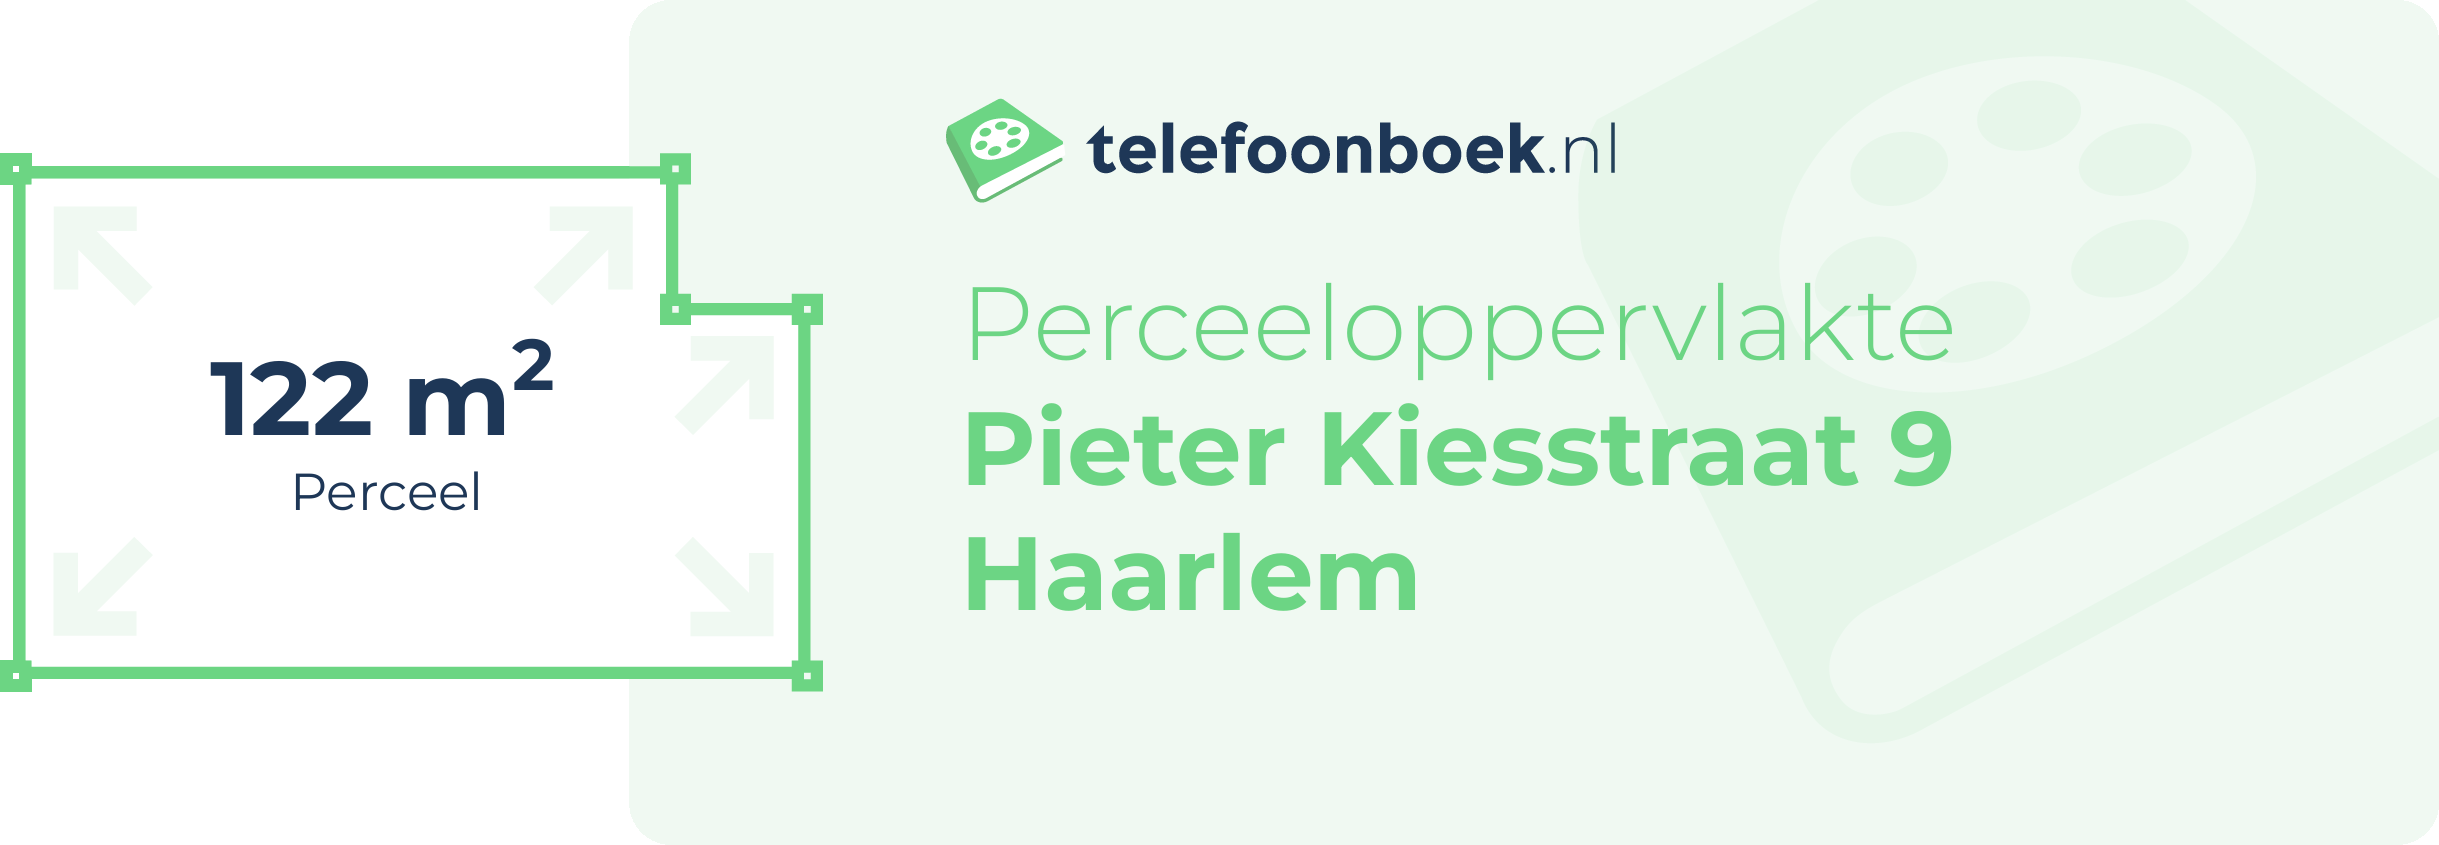 Perceeloppervlakte Pieter Kiesstraat 9 Haarlem